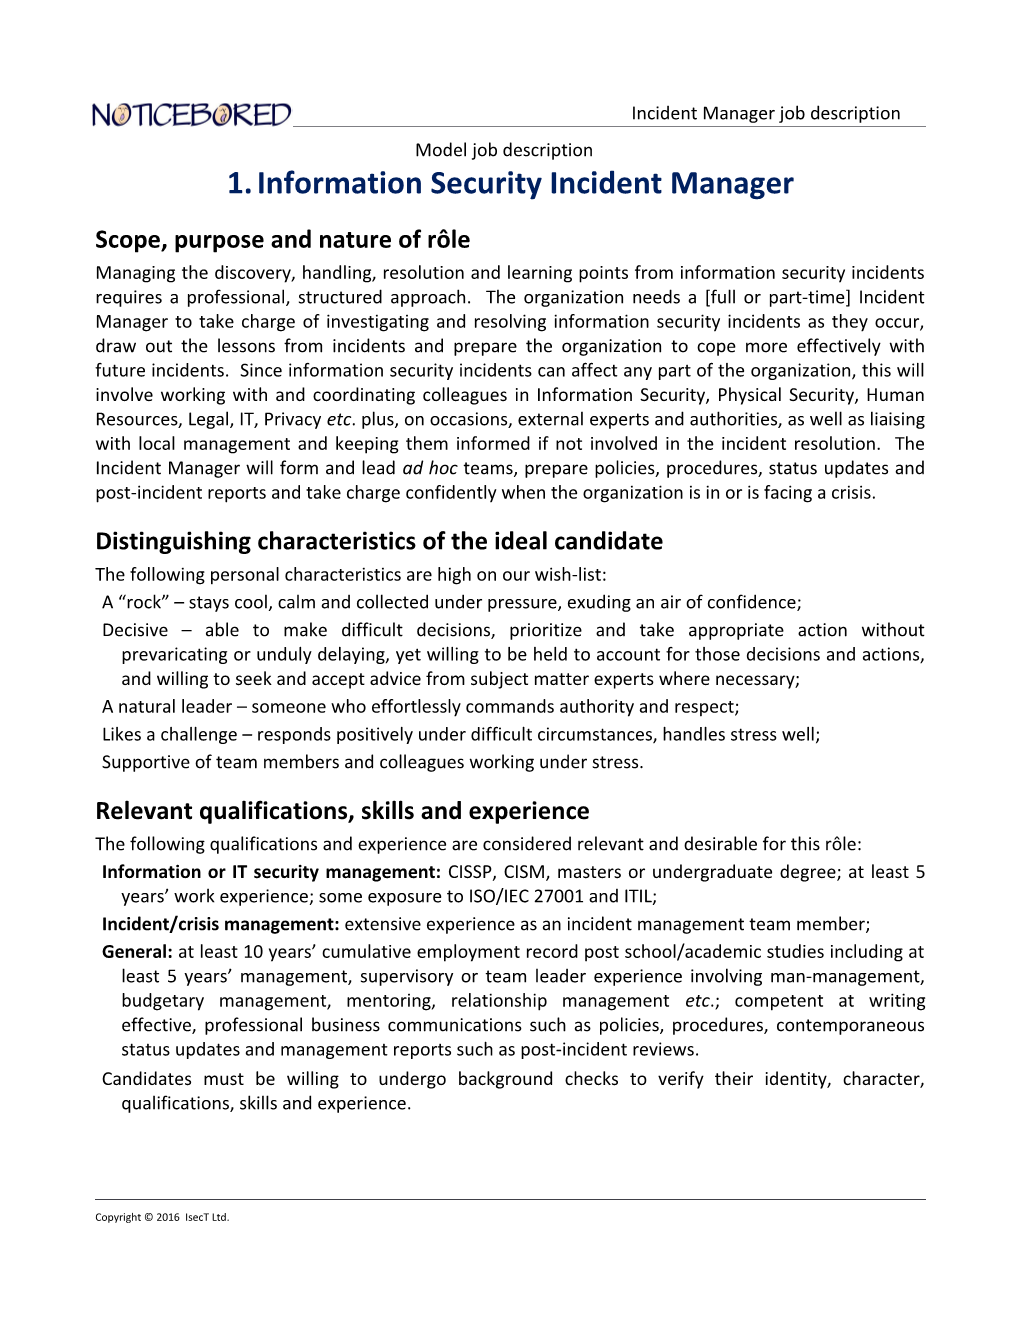 NB Model Job Description for Incident Manager